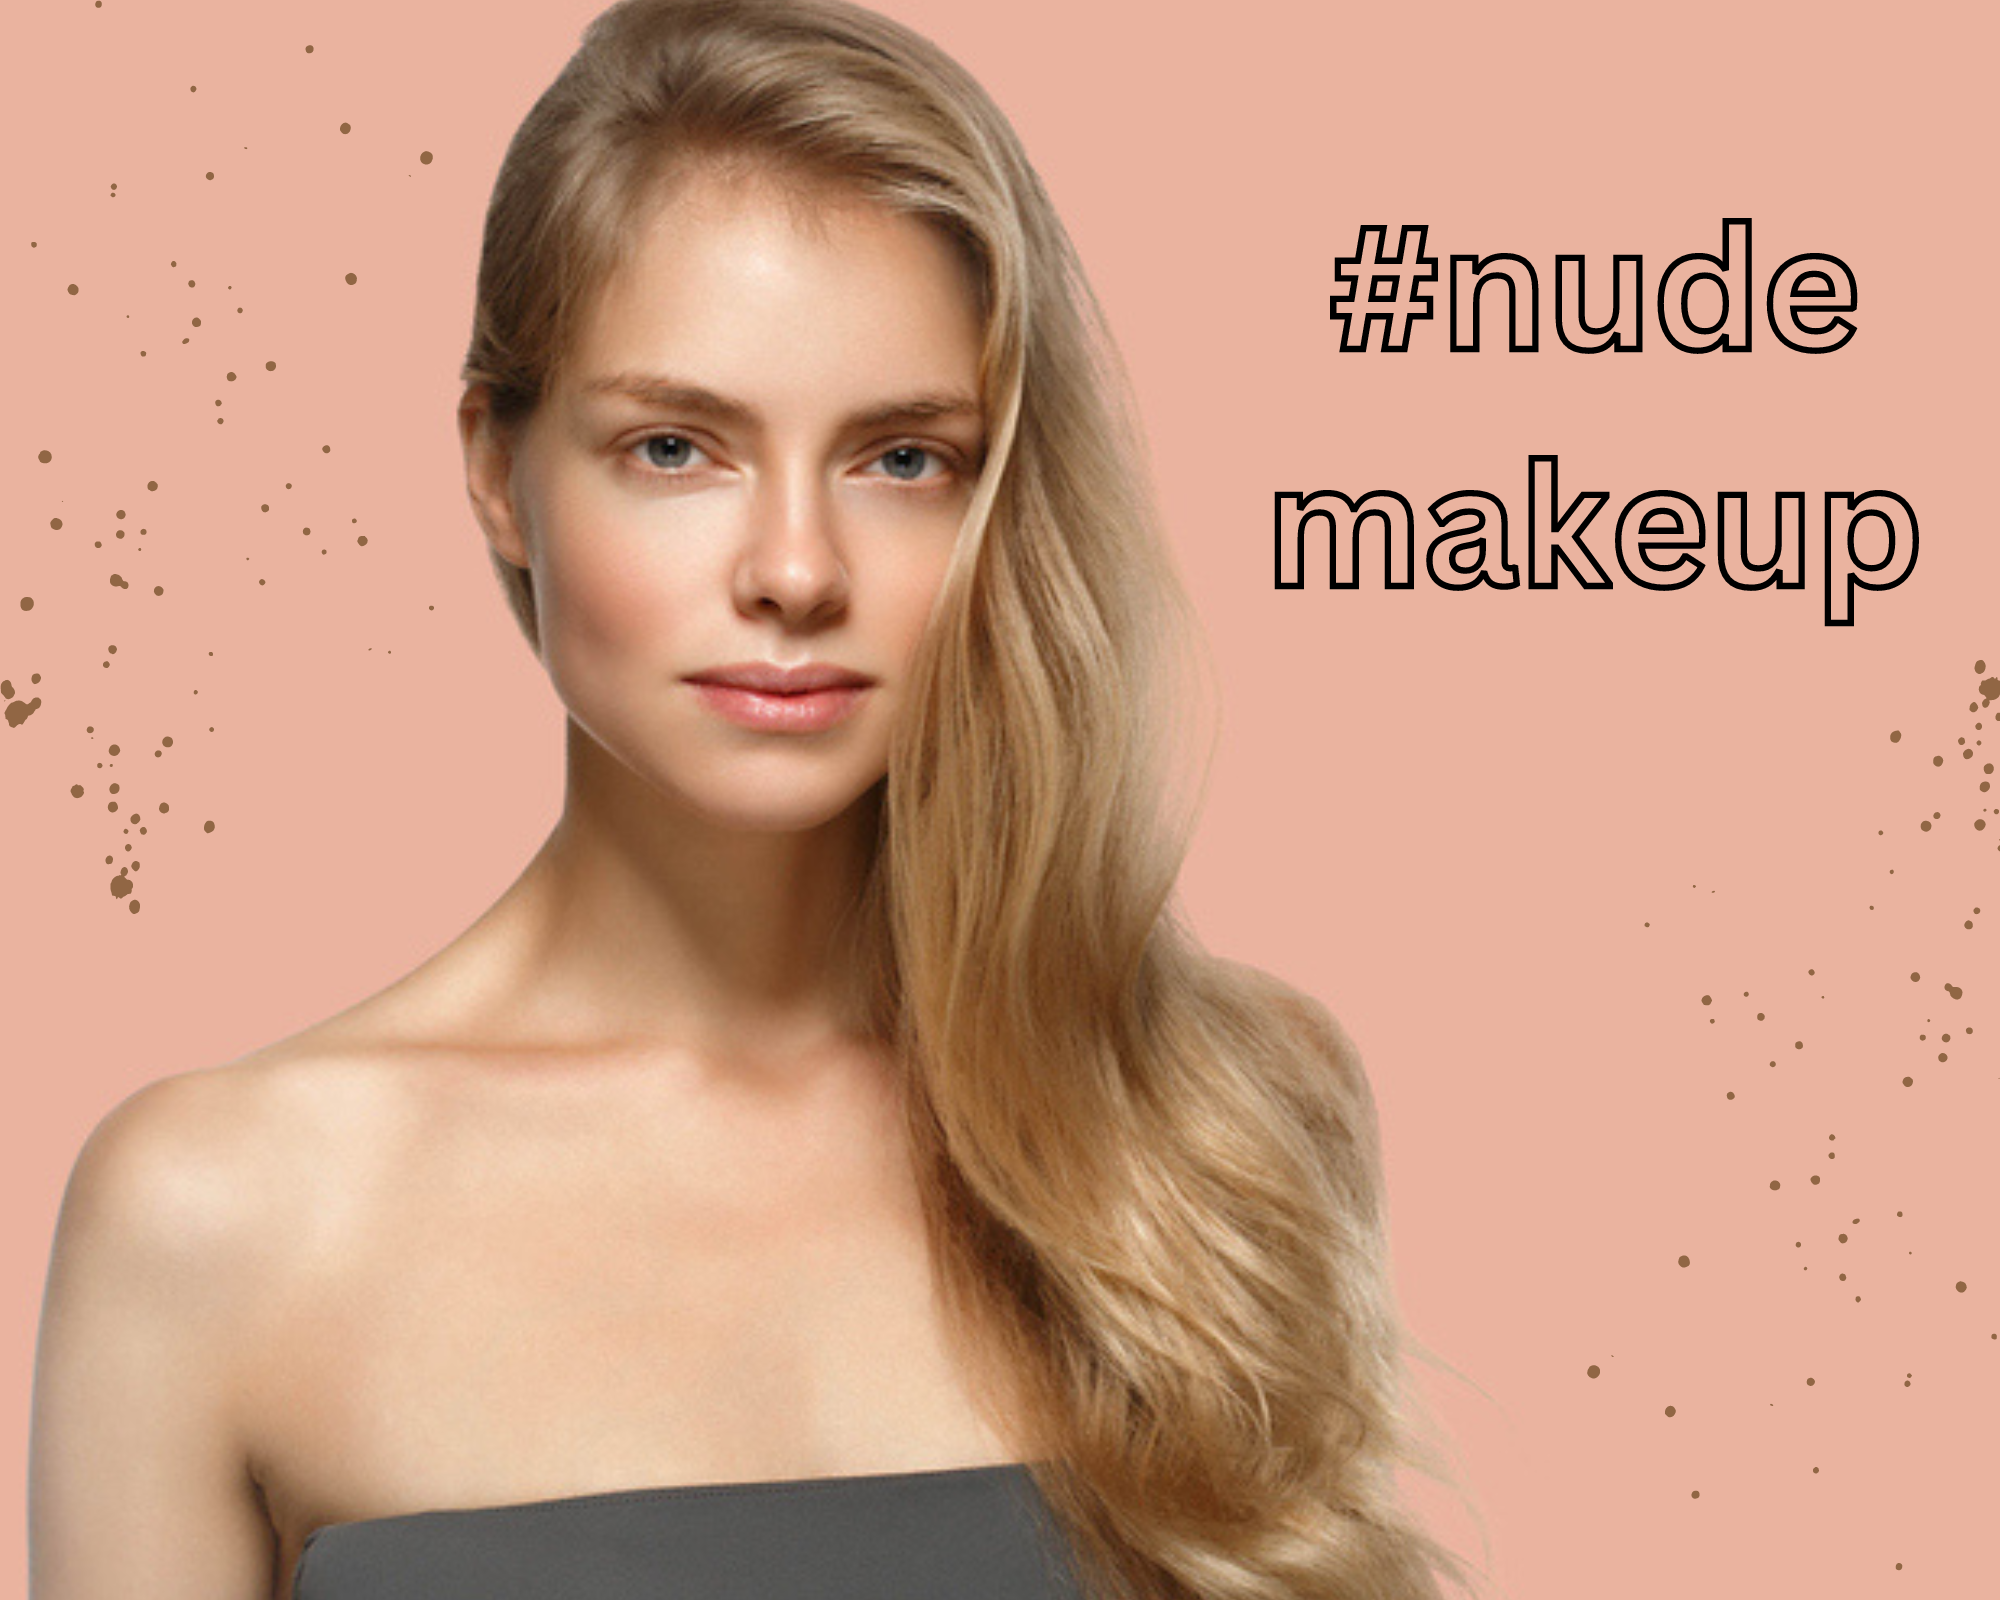 Nude makeup